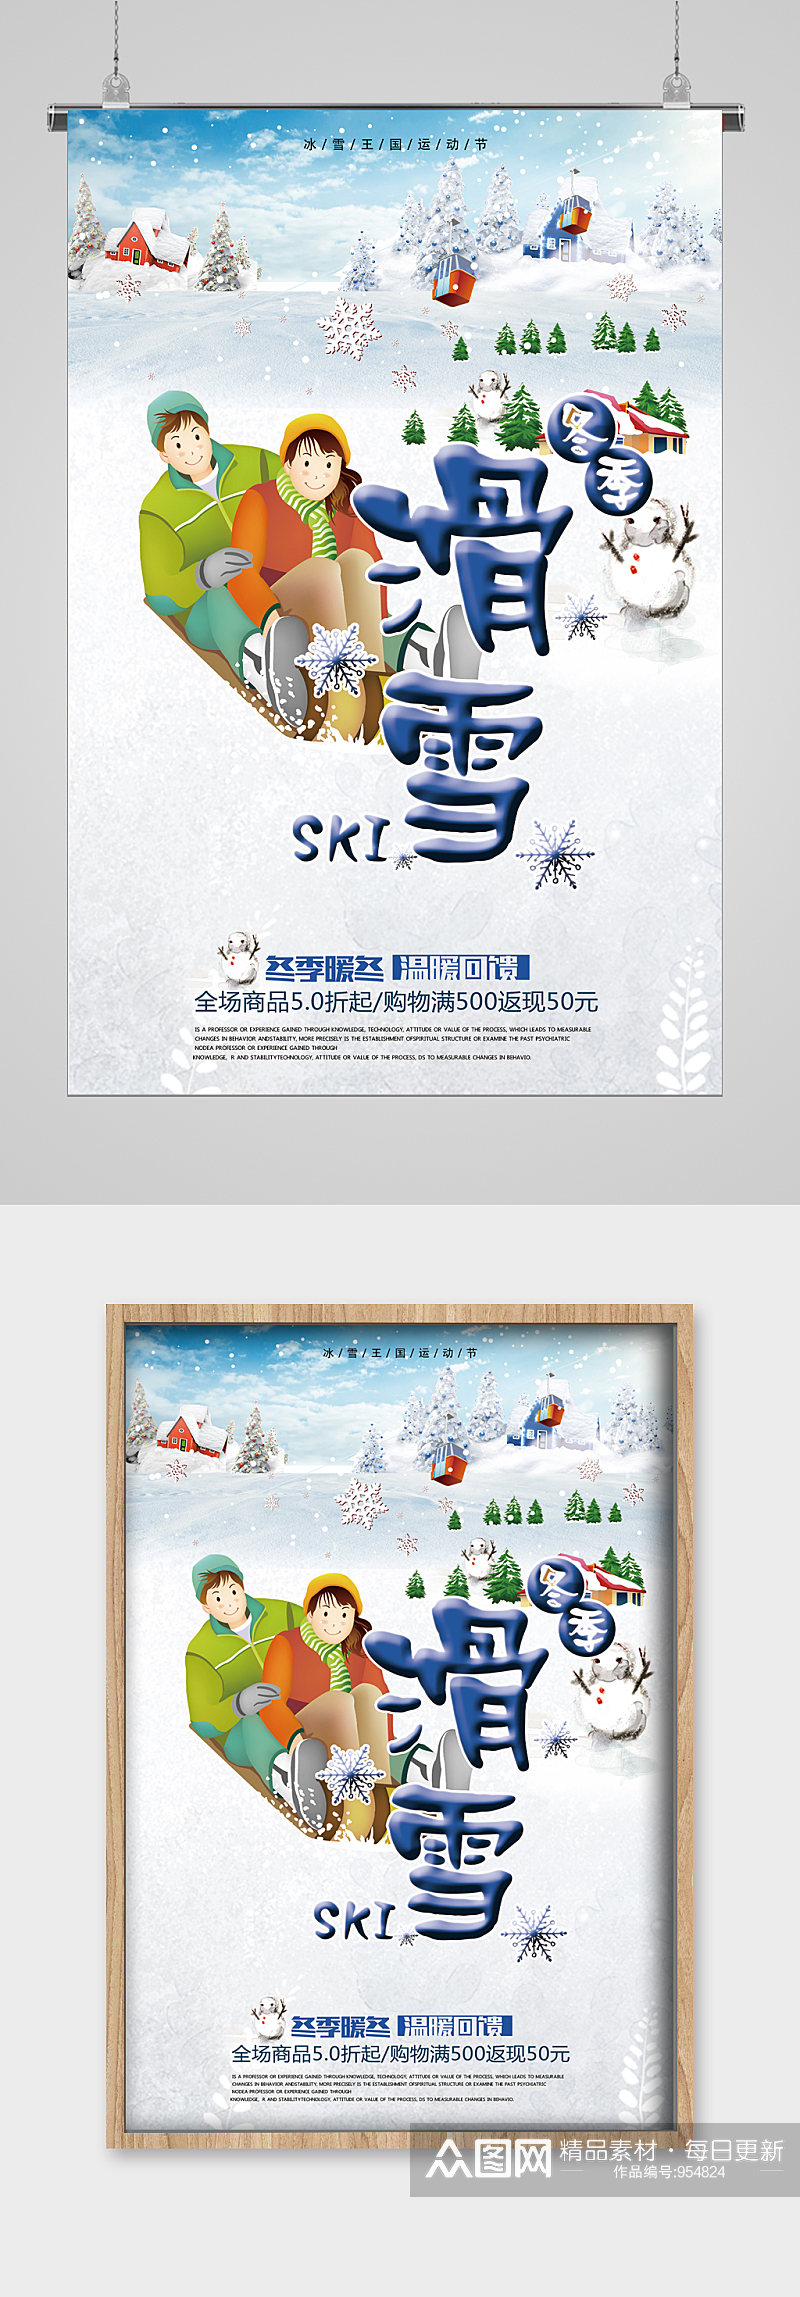 冬季滑雪运动节宣传海报素材